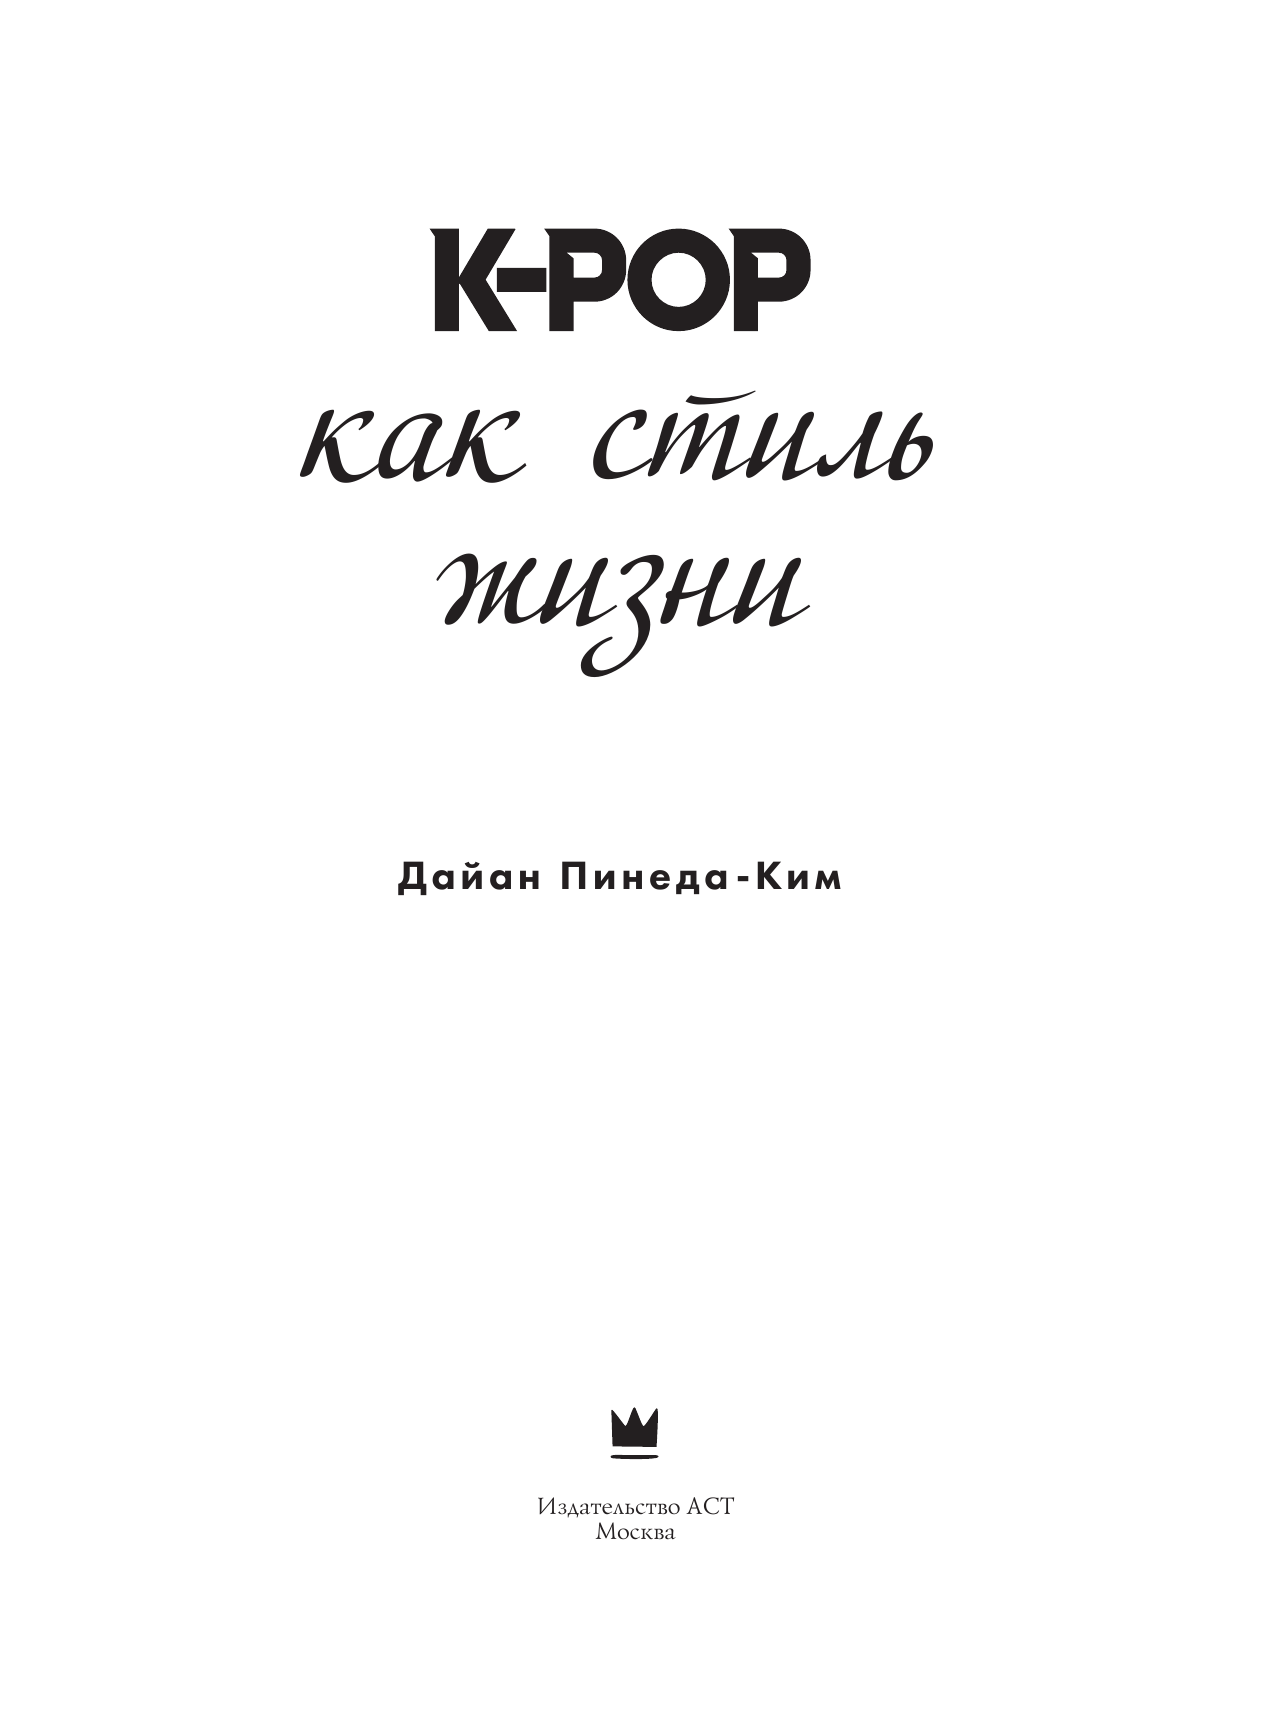 Пинеда-Ким Дайан K-POP как стиль жизни - страница 4